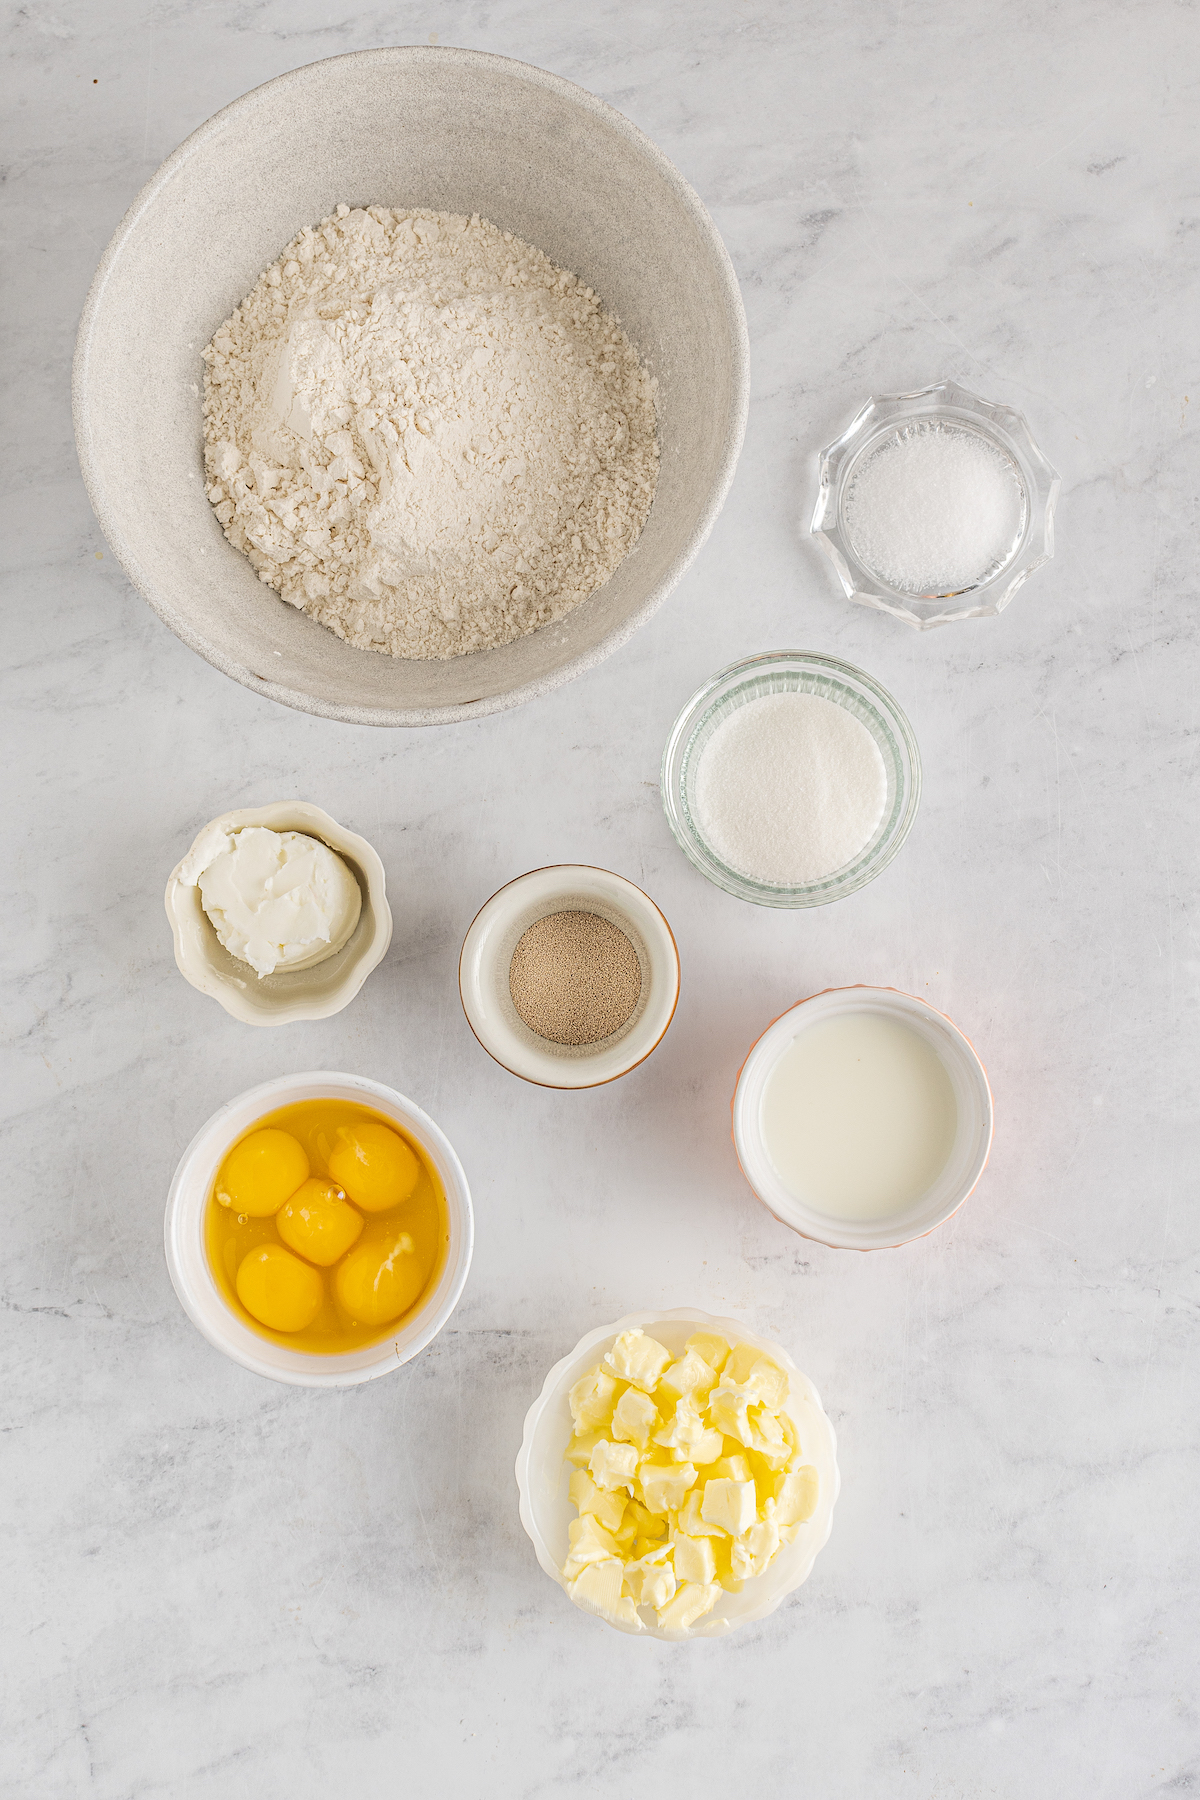 From top left: All-purpose flour, salt, sugar, yeast, milk, shortening, eggs, butter.